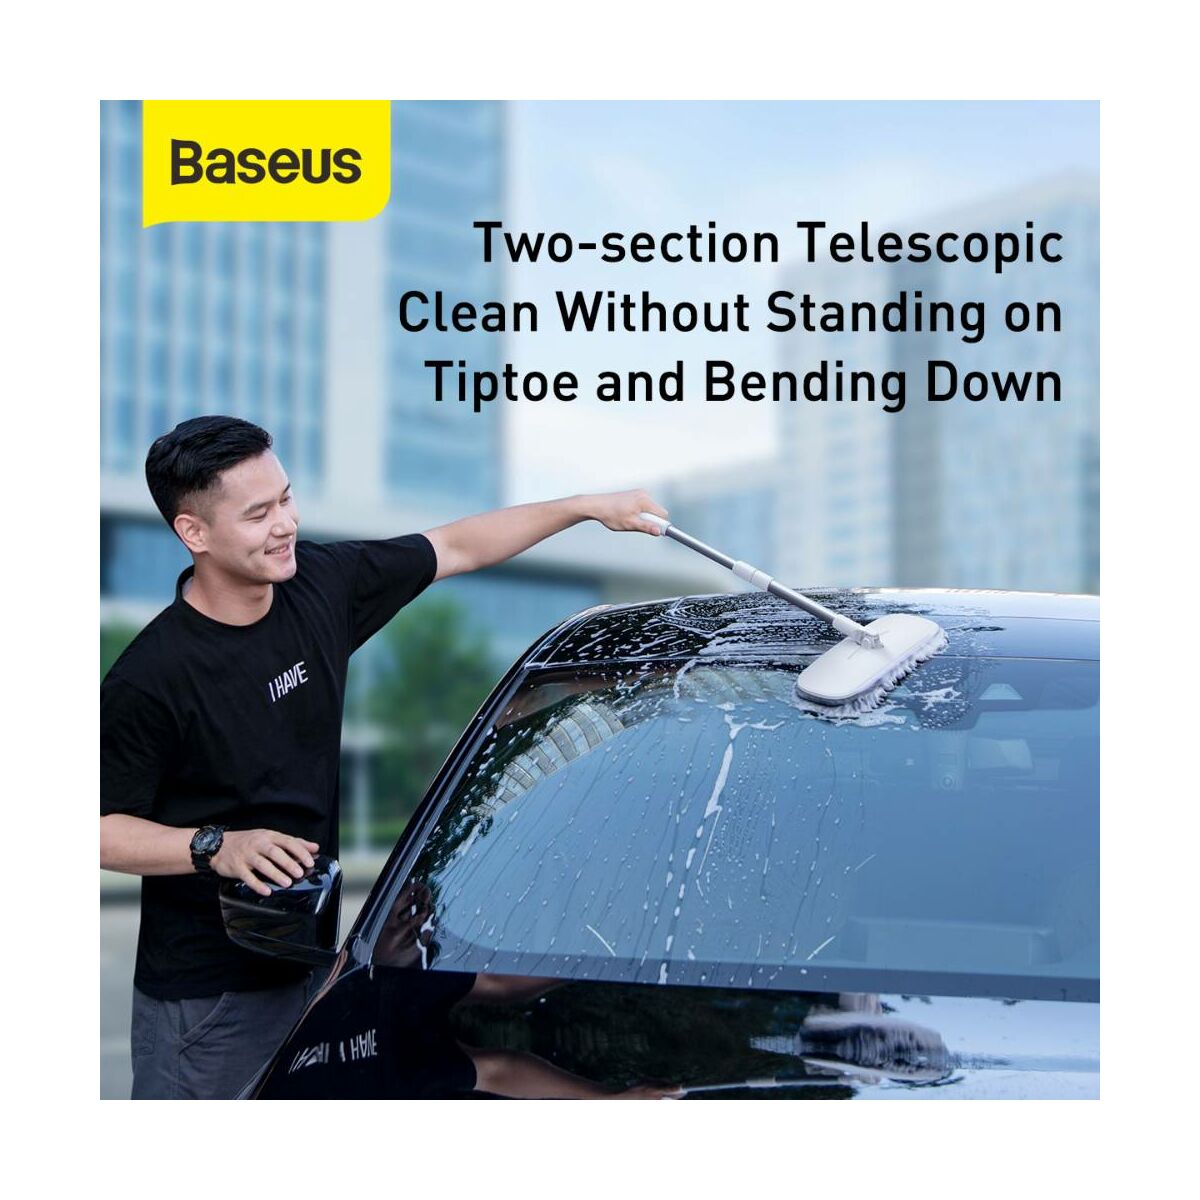 Kép 8/16 - Baseus autós kiegészítő, Handy Car Home mosó/tisztító nyélhez cserélhető ruha fej (2db / csomag) 100% poliészter chenille, szürke (CRTB-A0G)